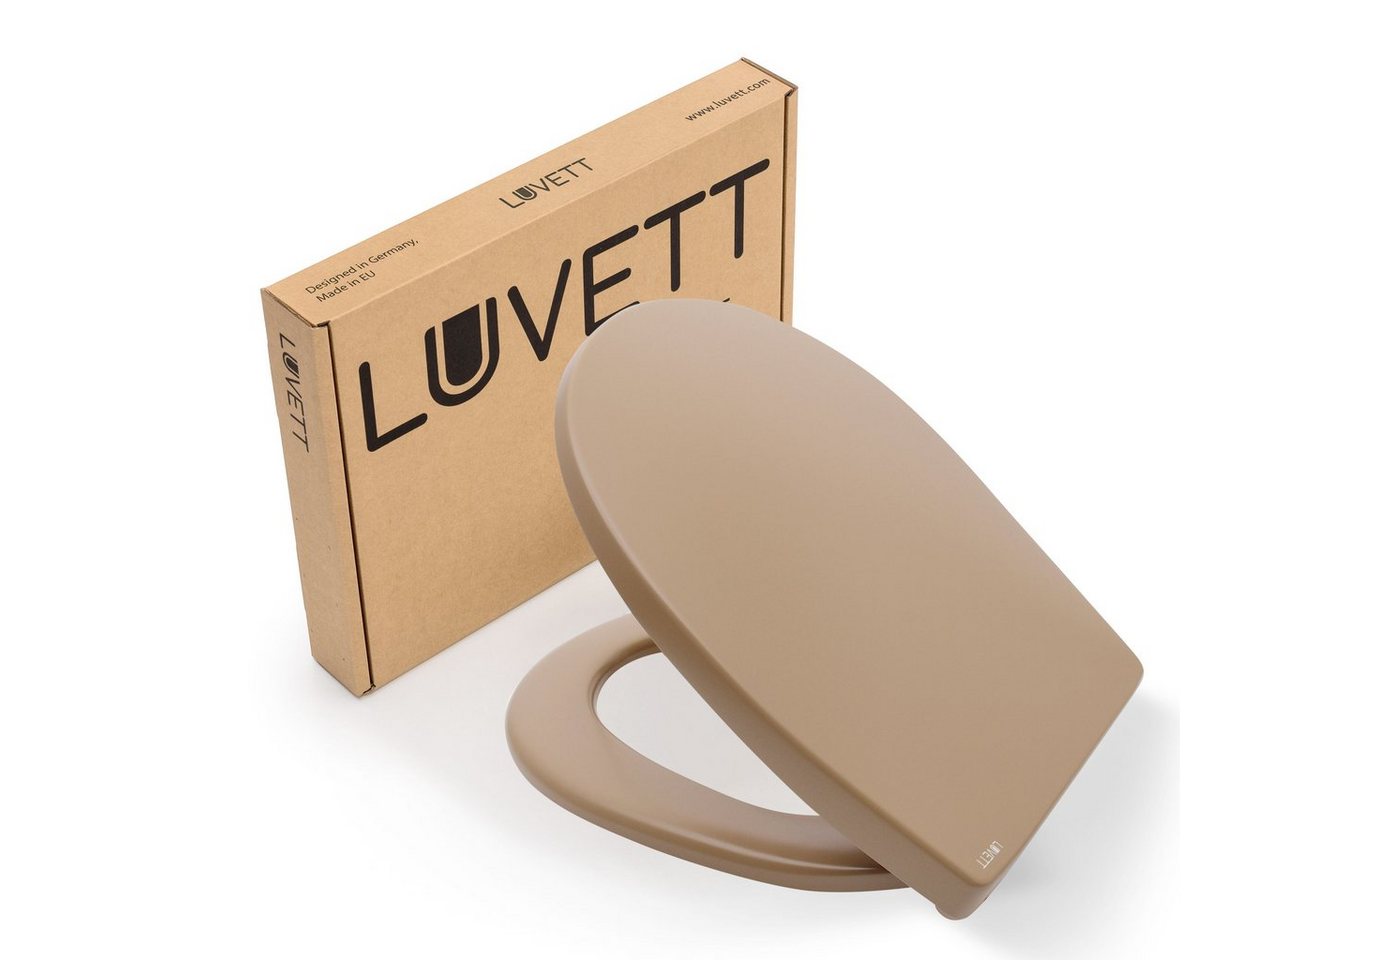 LUVETT WC-Sitz Farben C100 (Komplett-Set, Inklusive 3 Befestigungsarten), mit Original SoftClose® Absenkautomatik, Duroplast von LUVETT